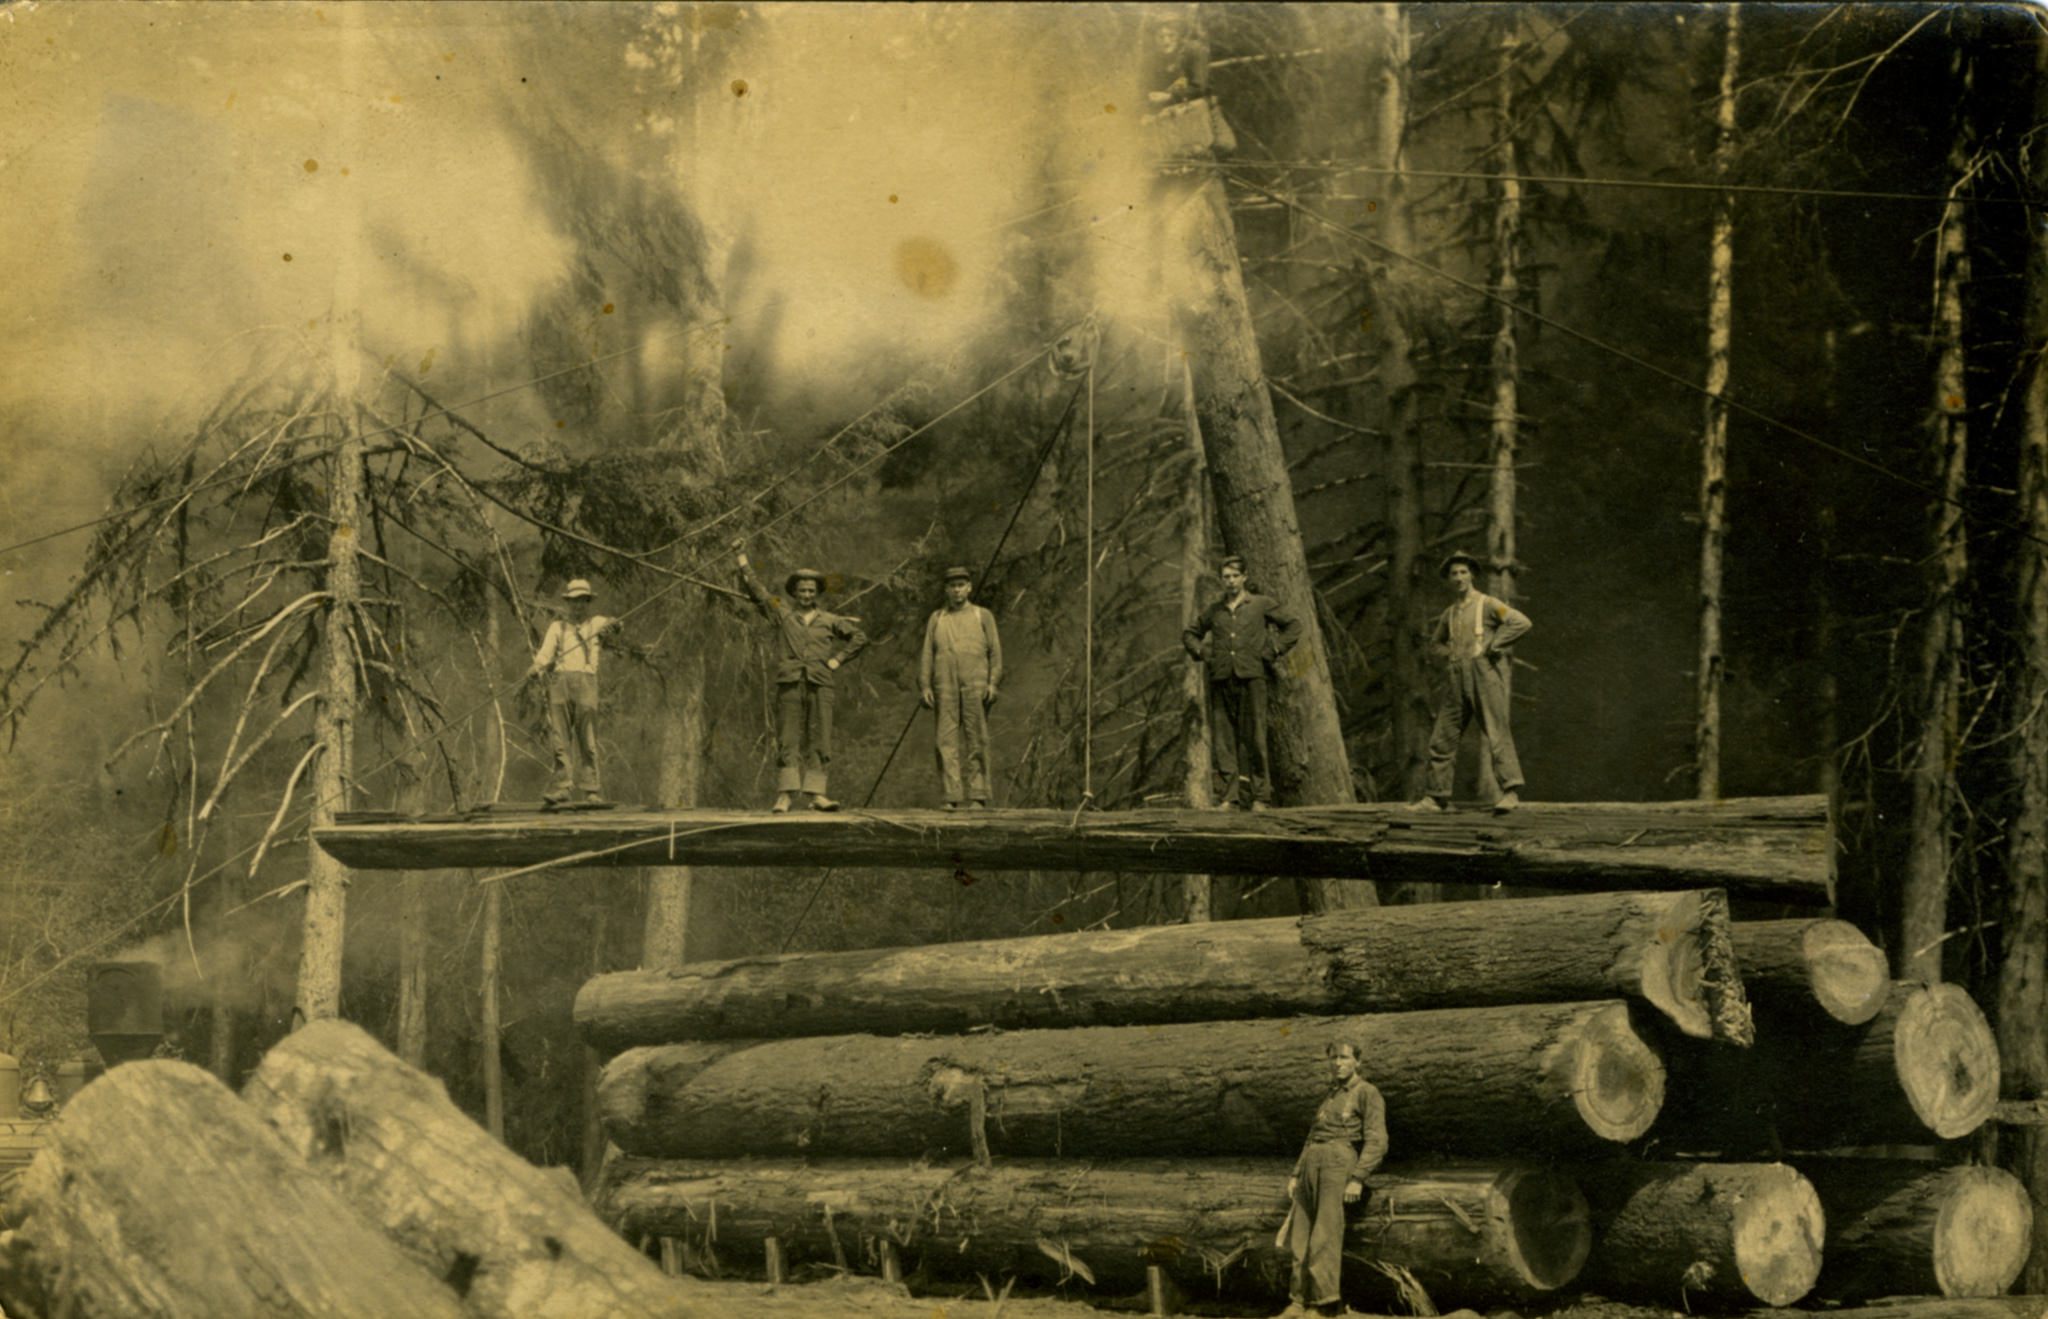 1800 s logging photos